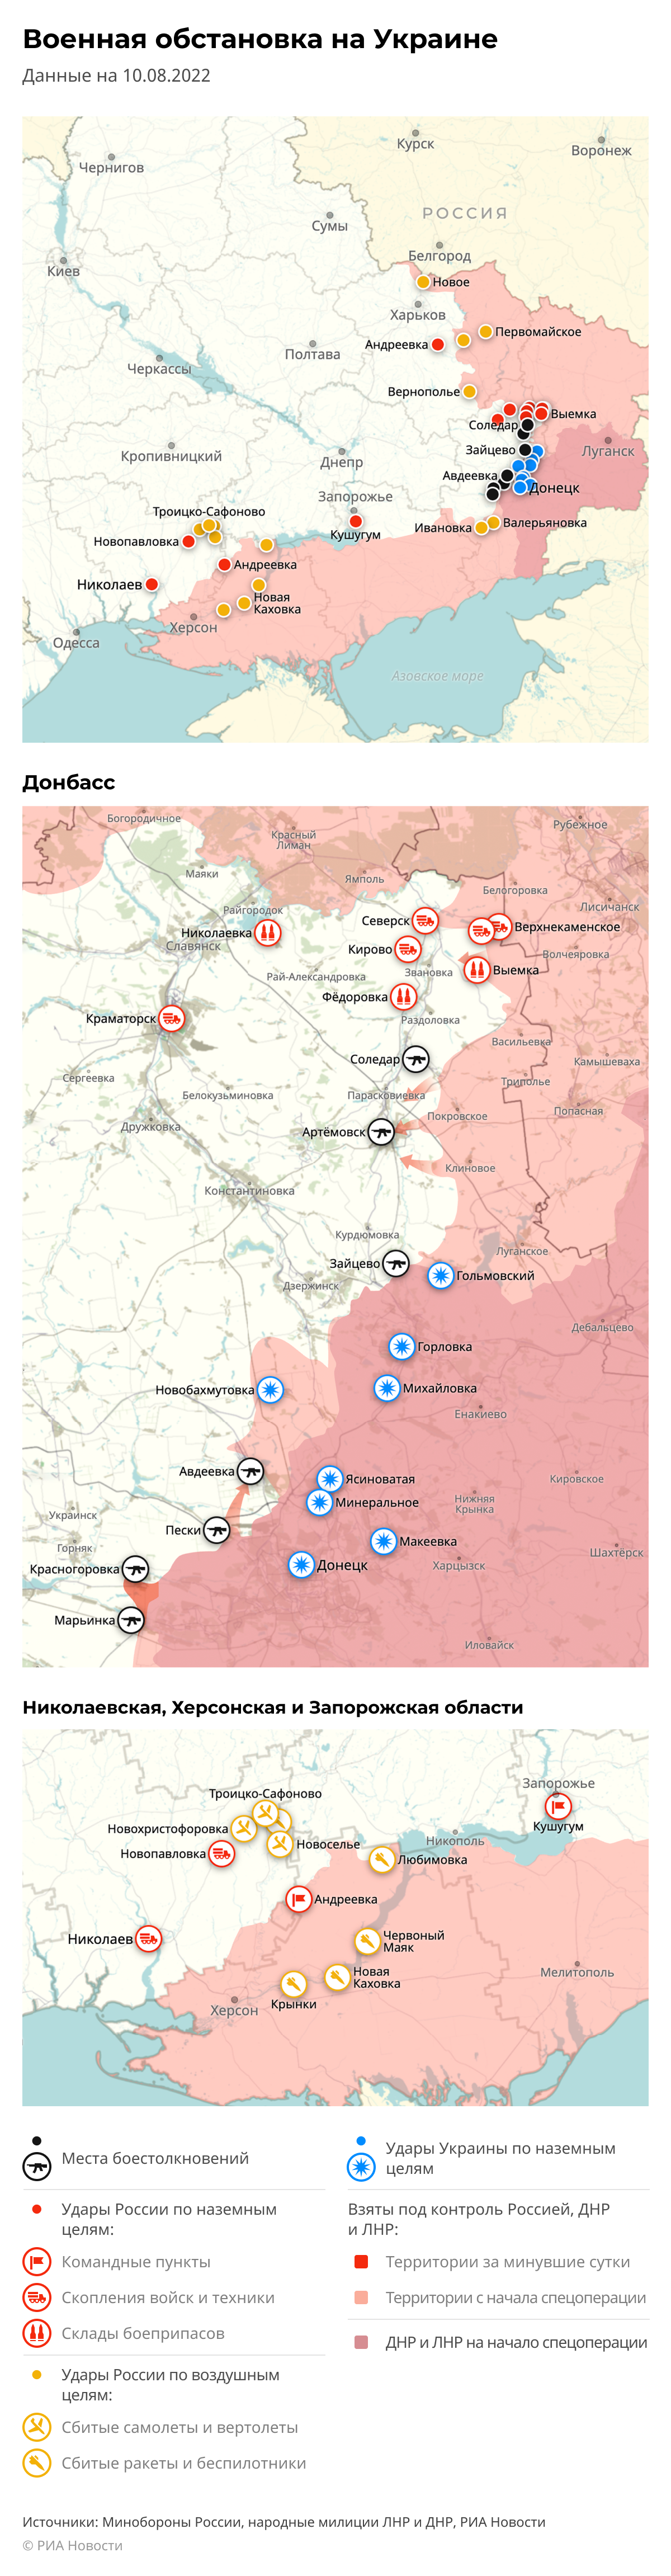 Карта спецоперации Вооруженных сил России на Украине на 10.08.2022